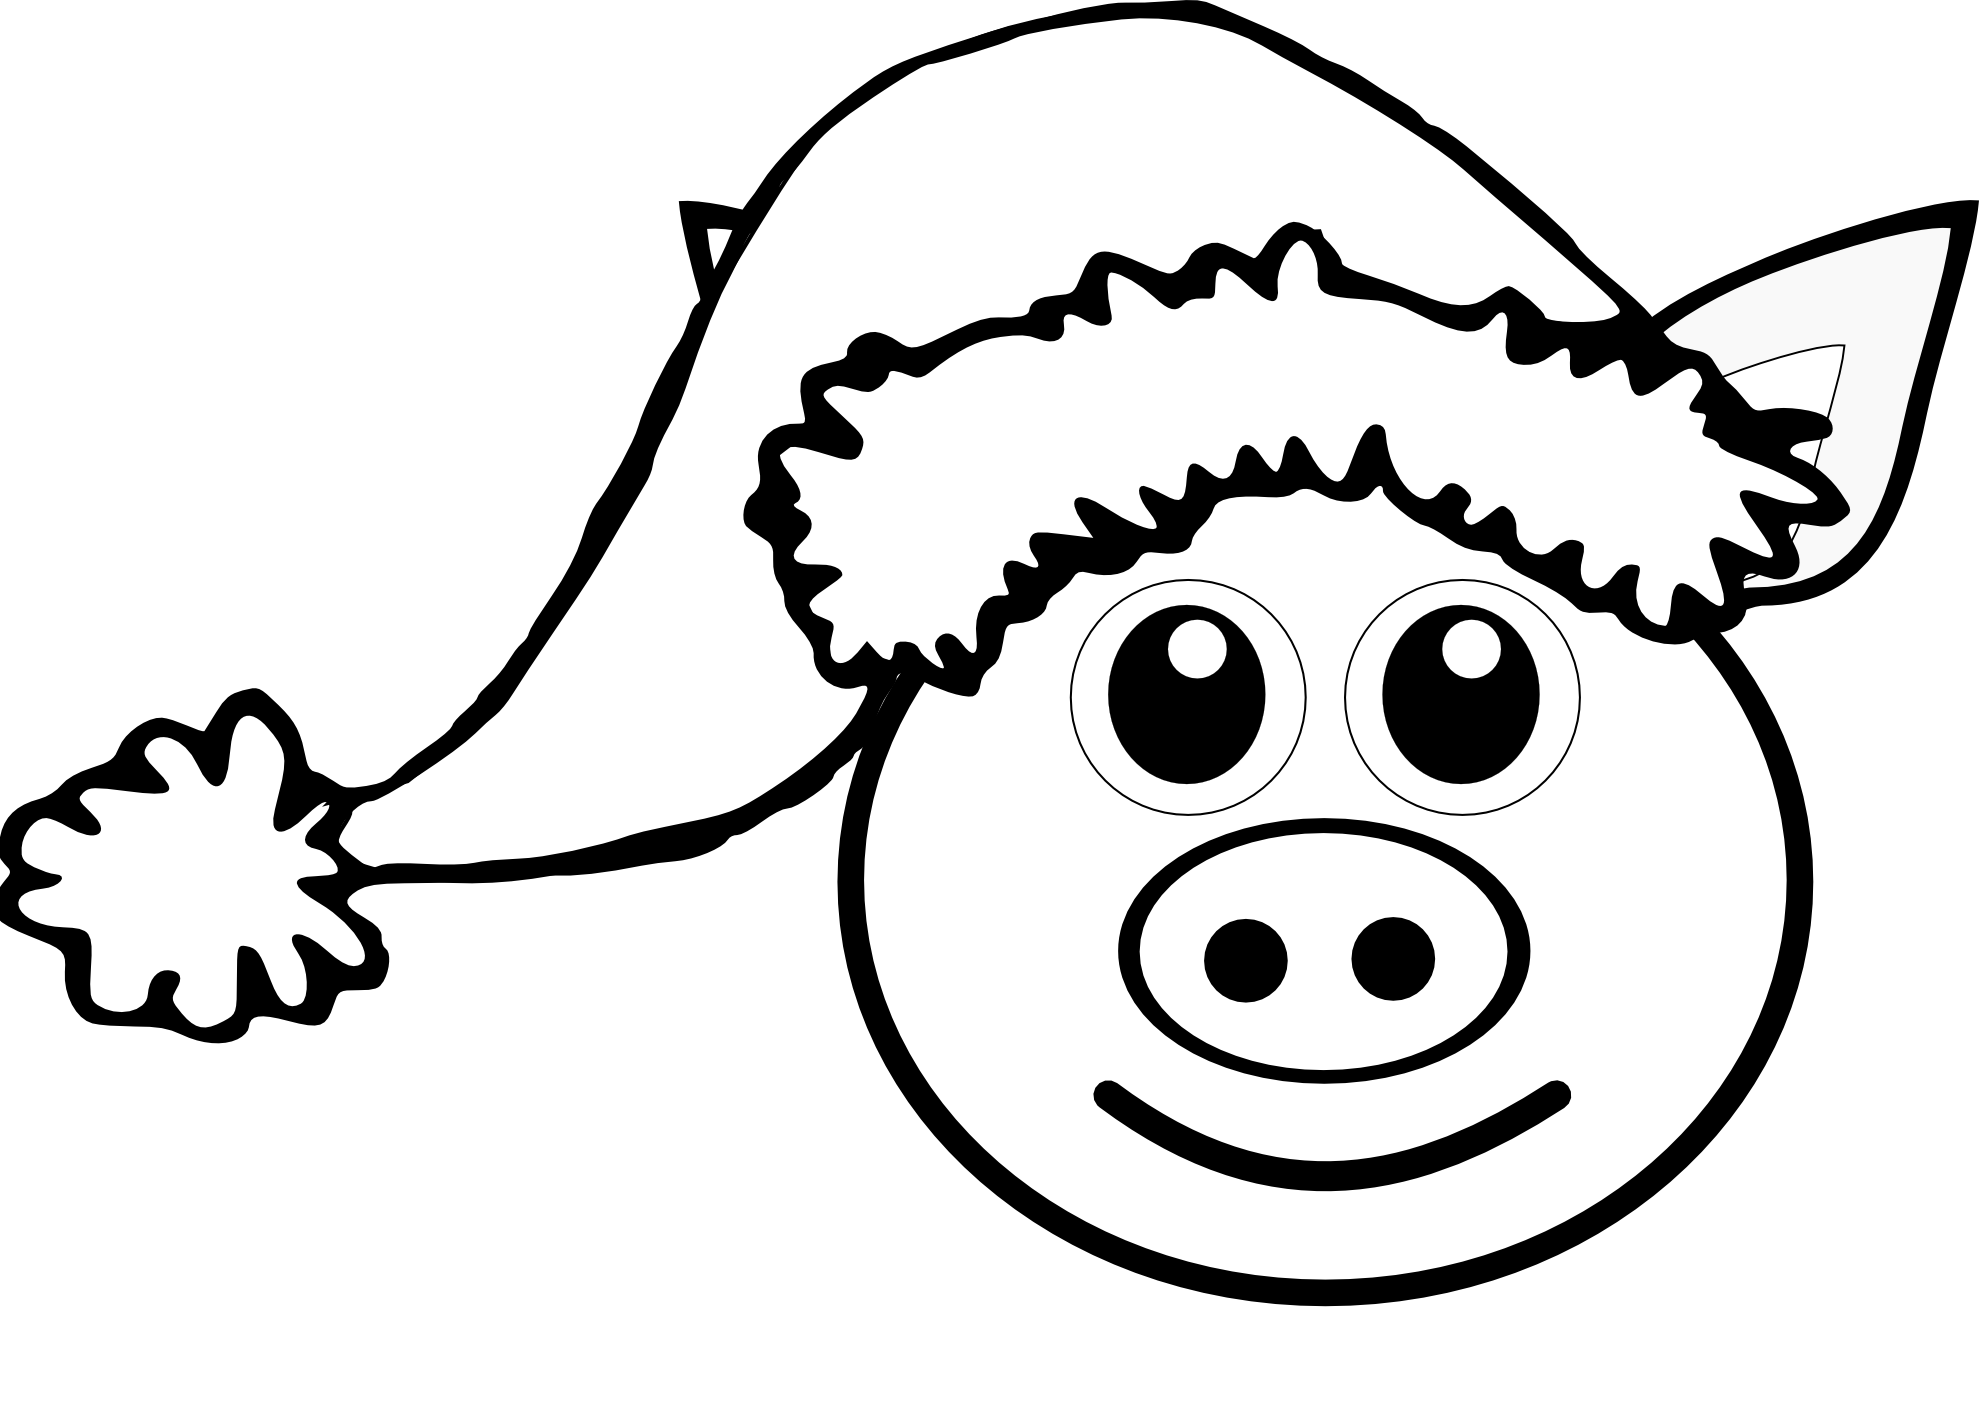 clipartist.net » Clip Art » palomaironique pig face cartoon pink ...